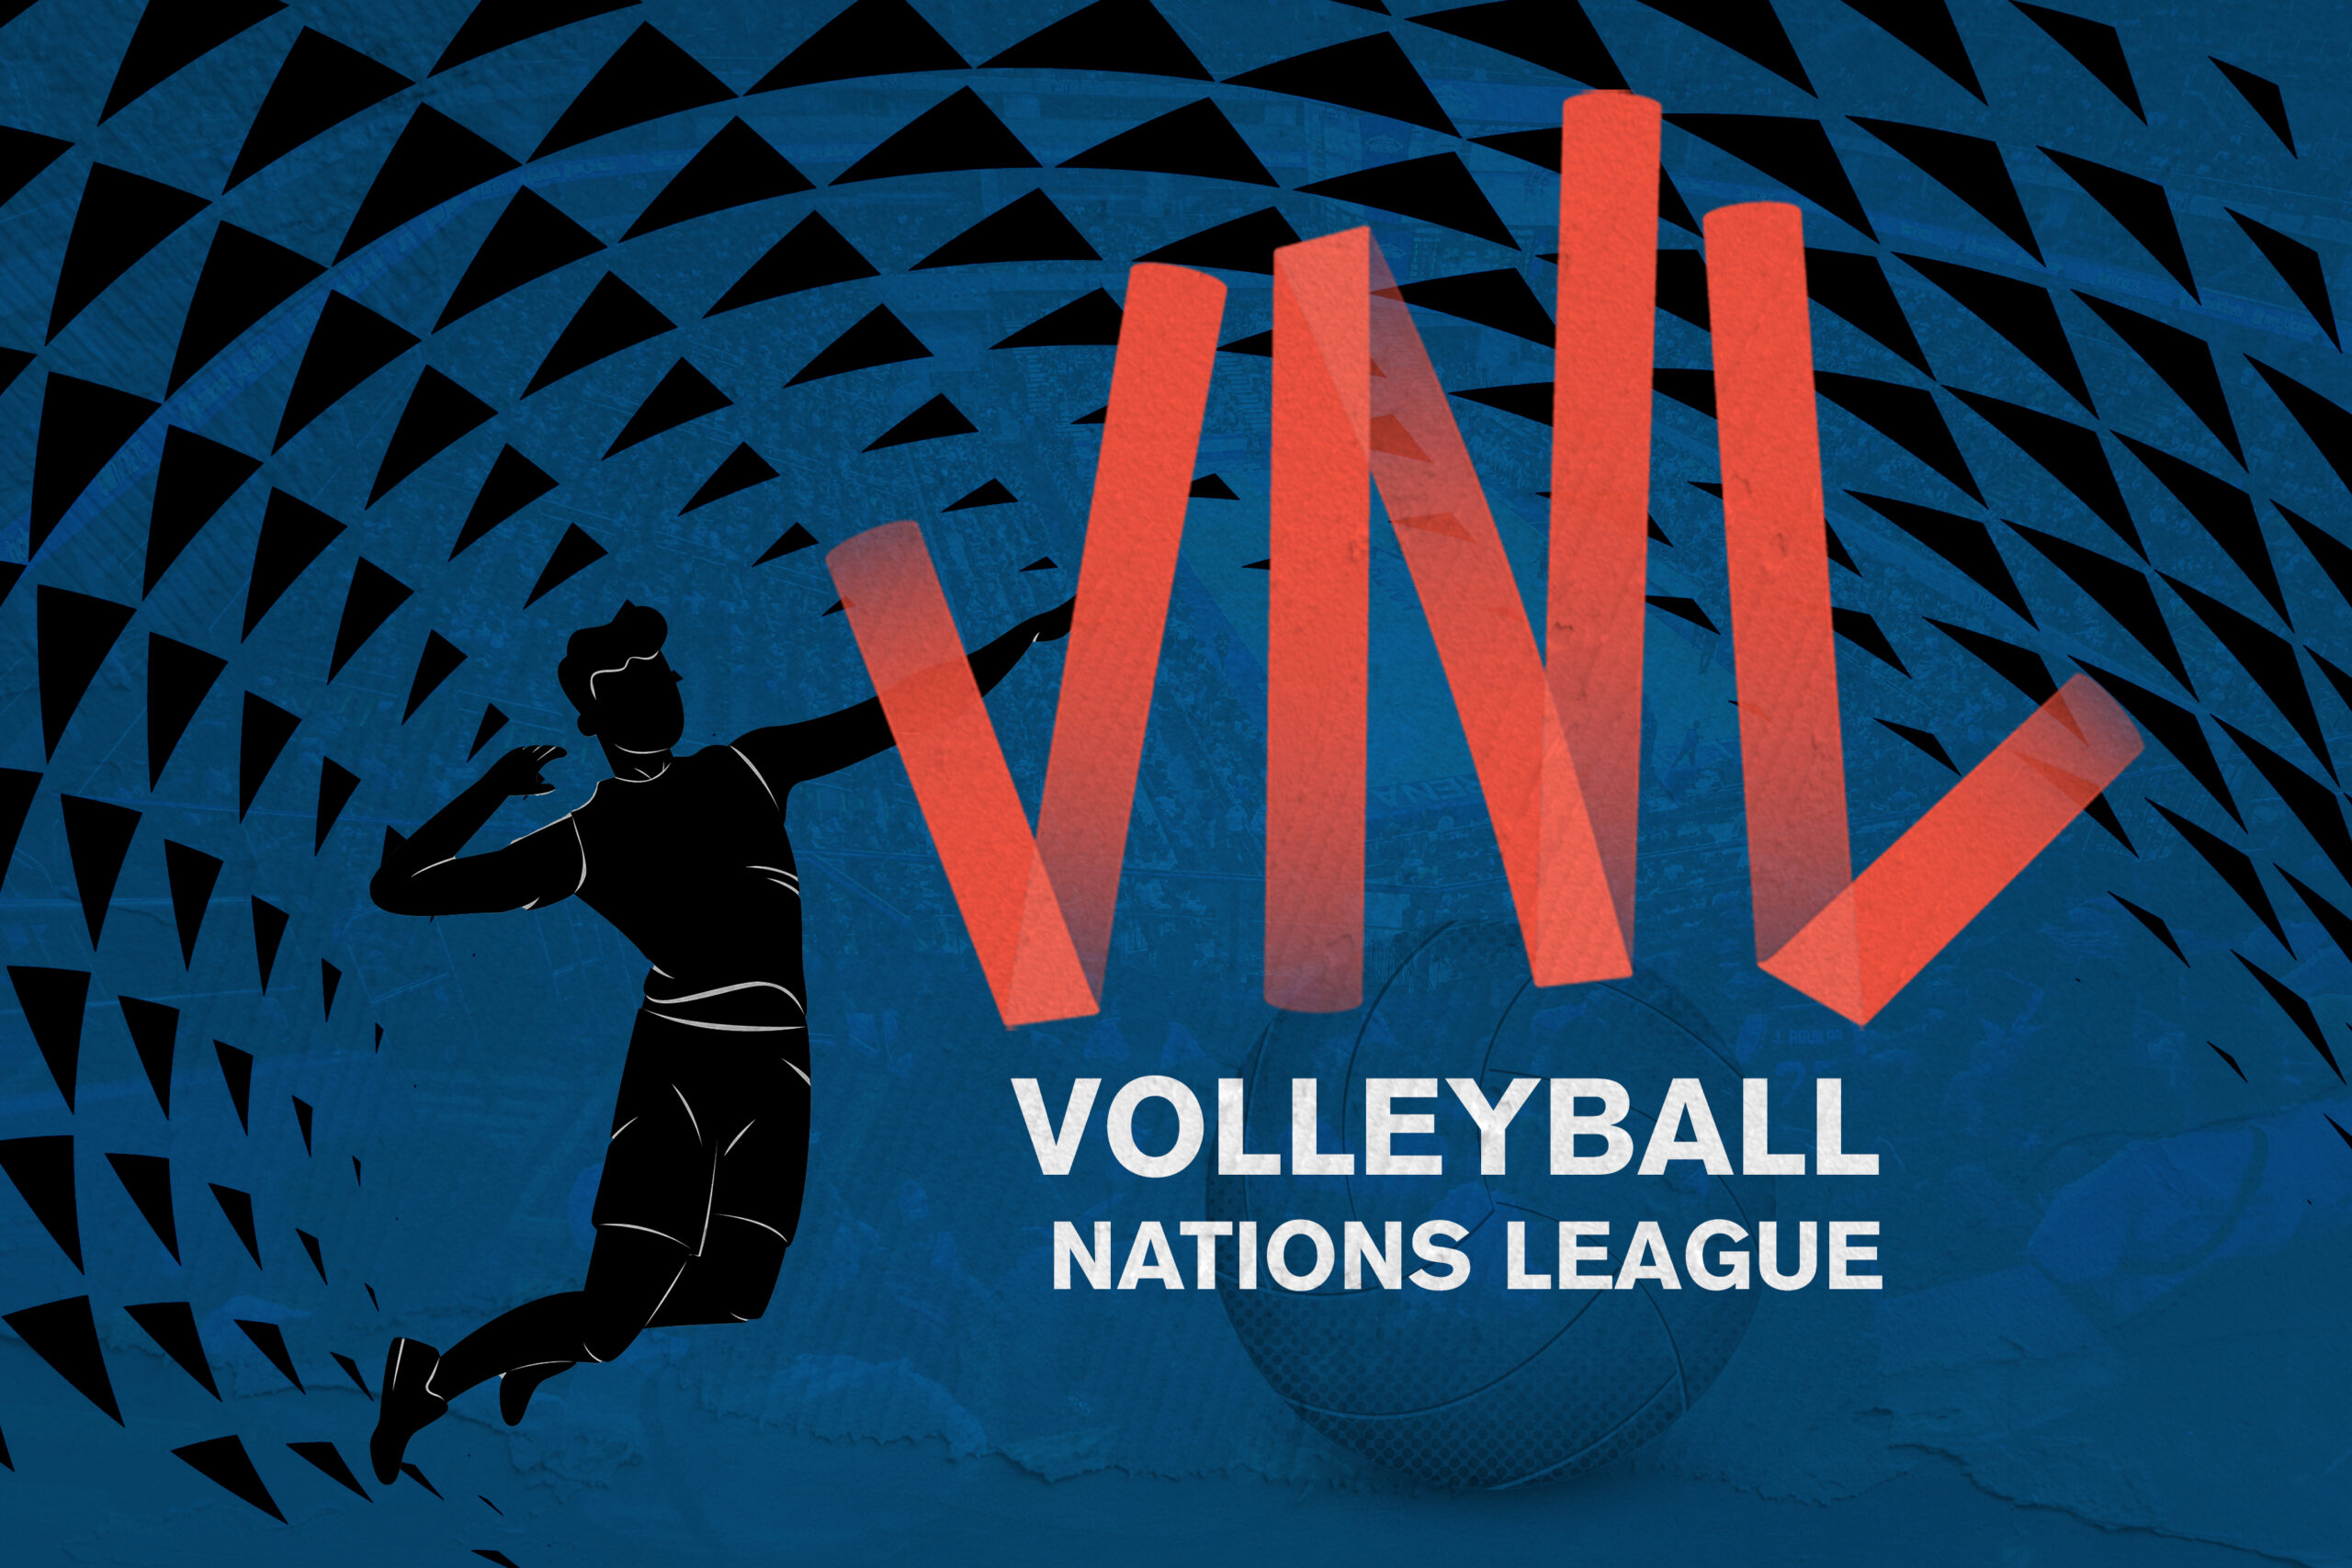 VNL A primer on a world-class tournament Inquirer Sports